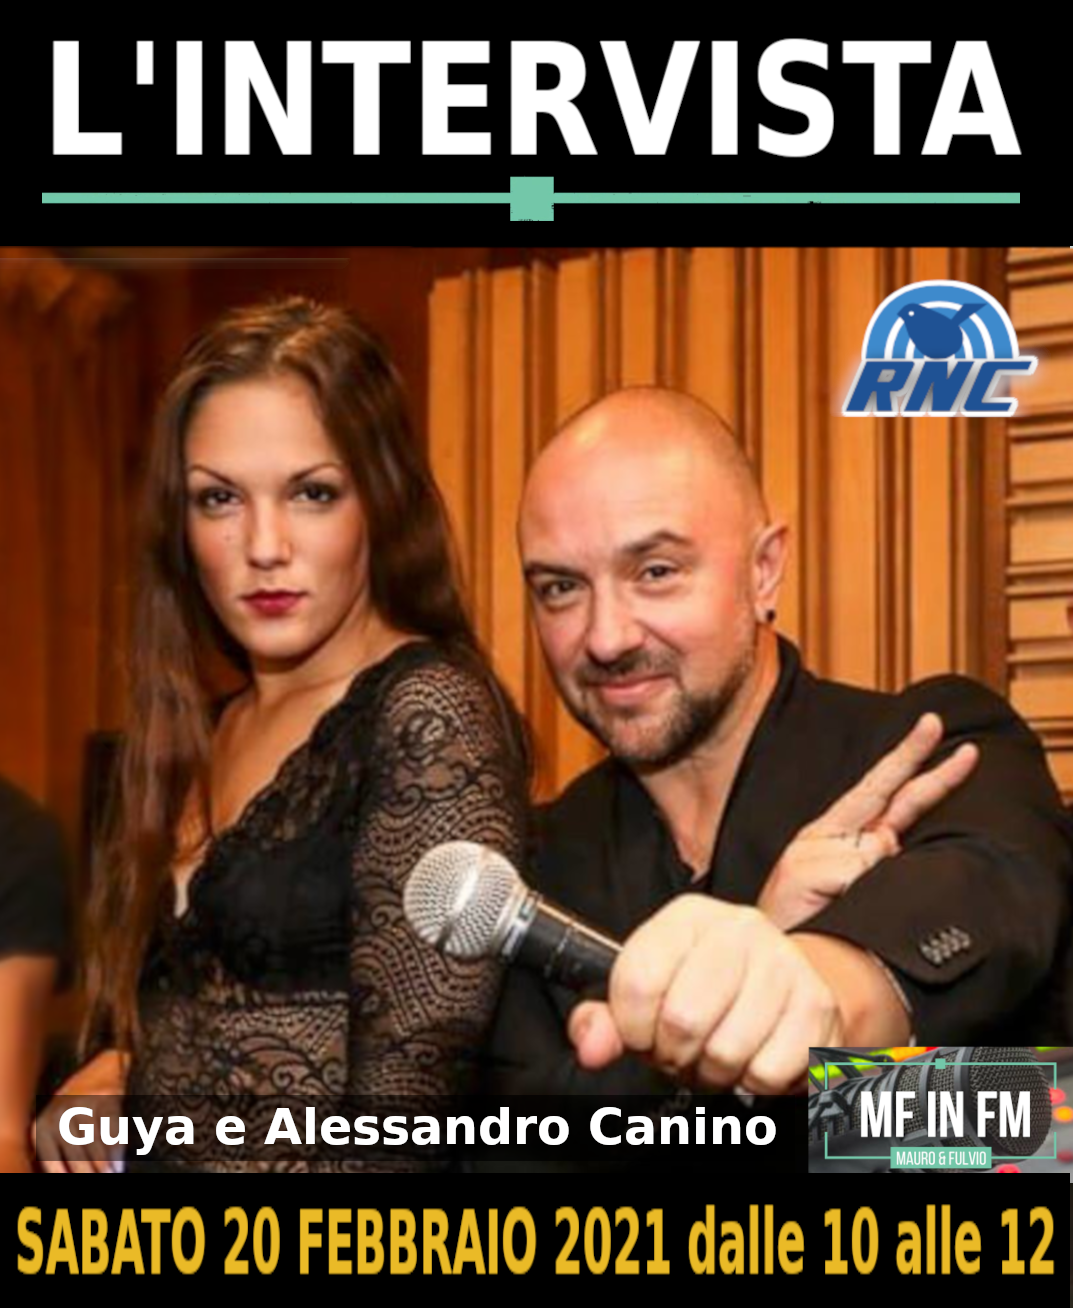 L’intervista: Guya e Alessandro Canino post thumbnail image